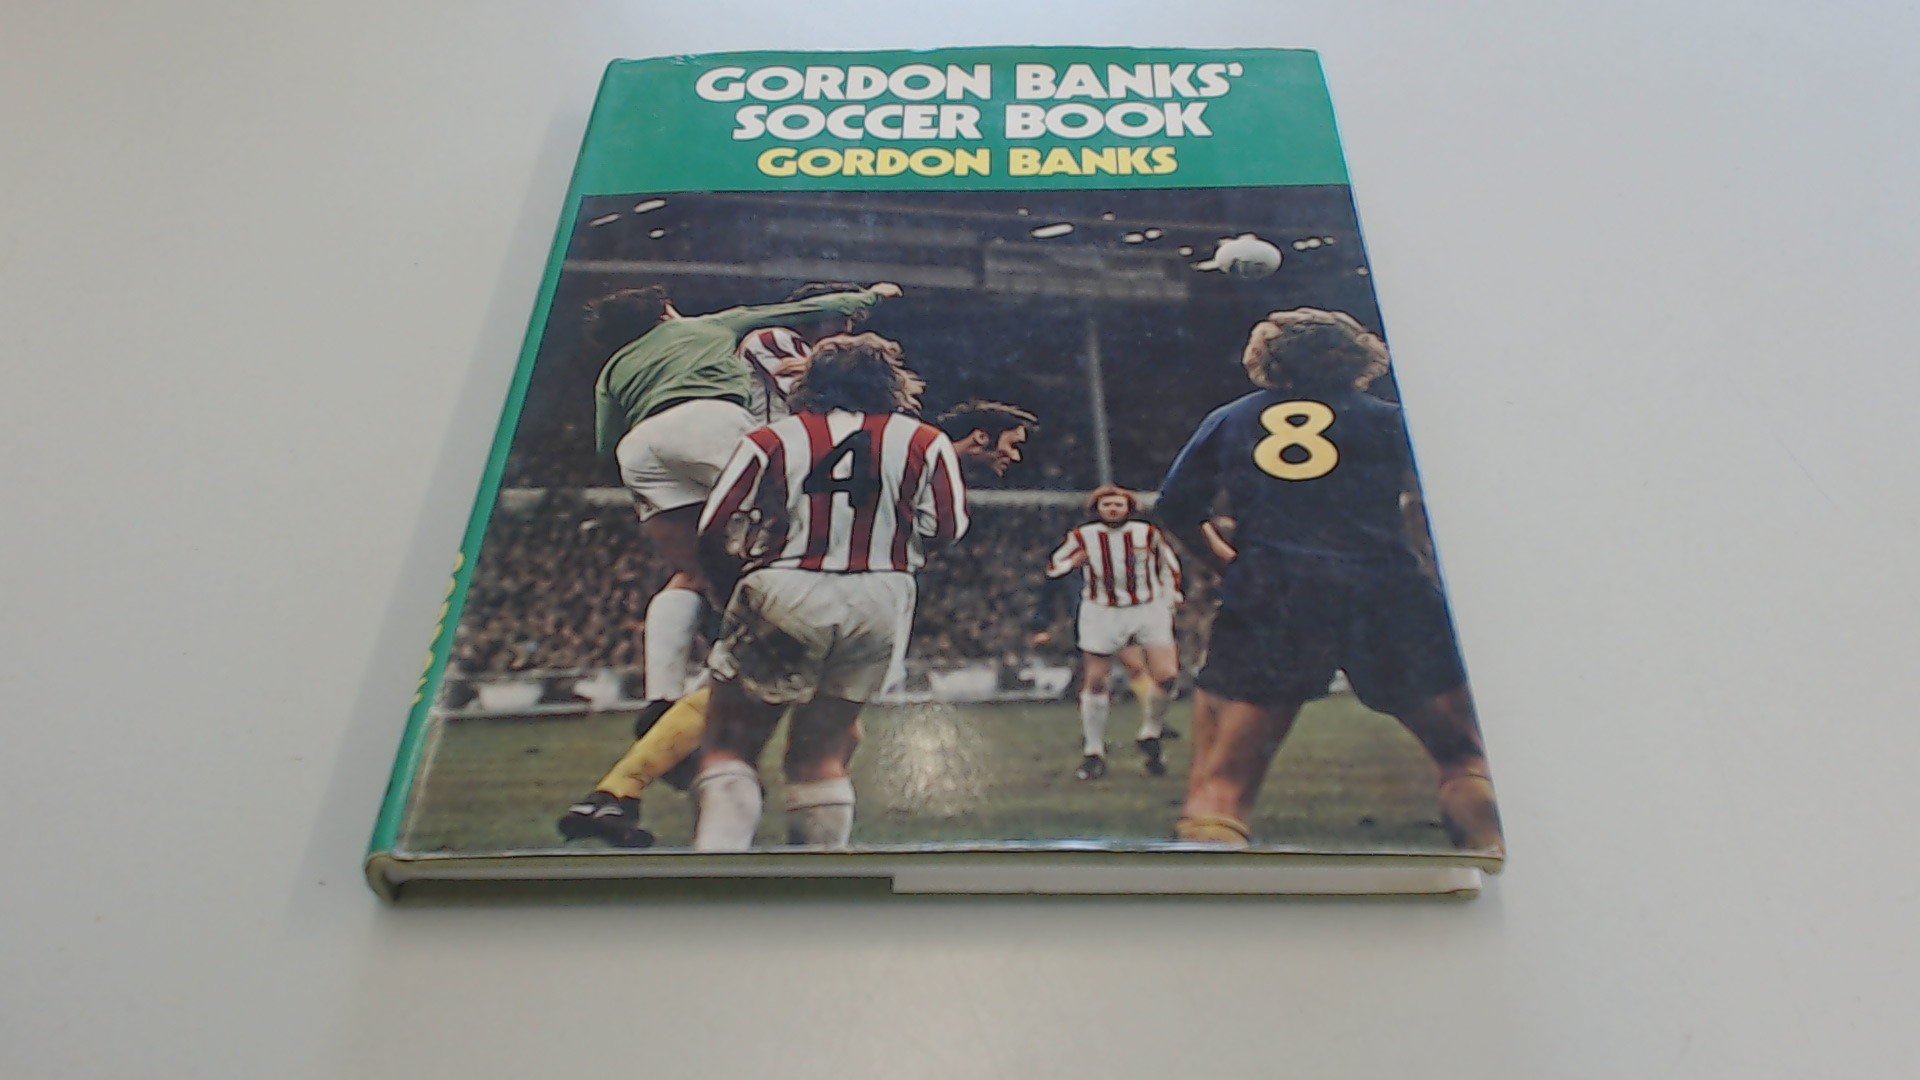 Gordon Banks Soccer Book Amazon